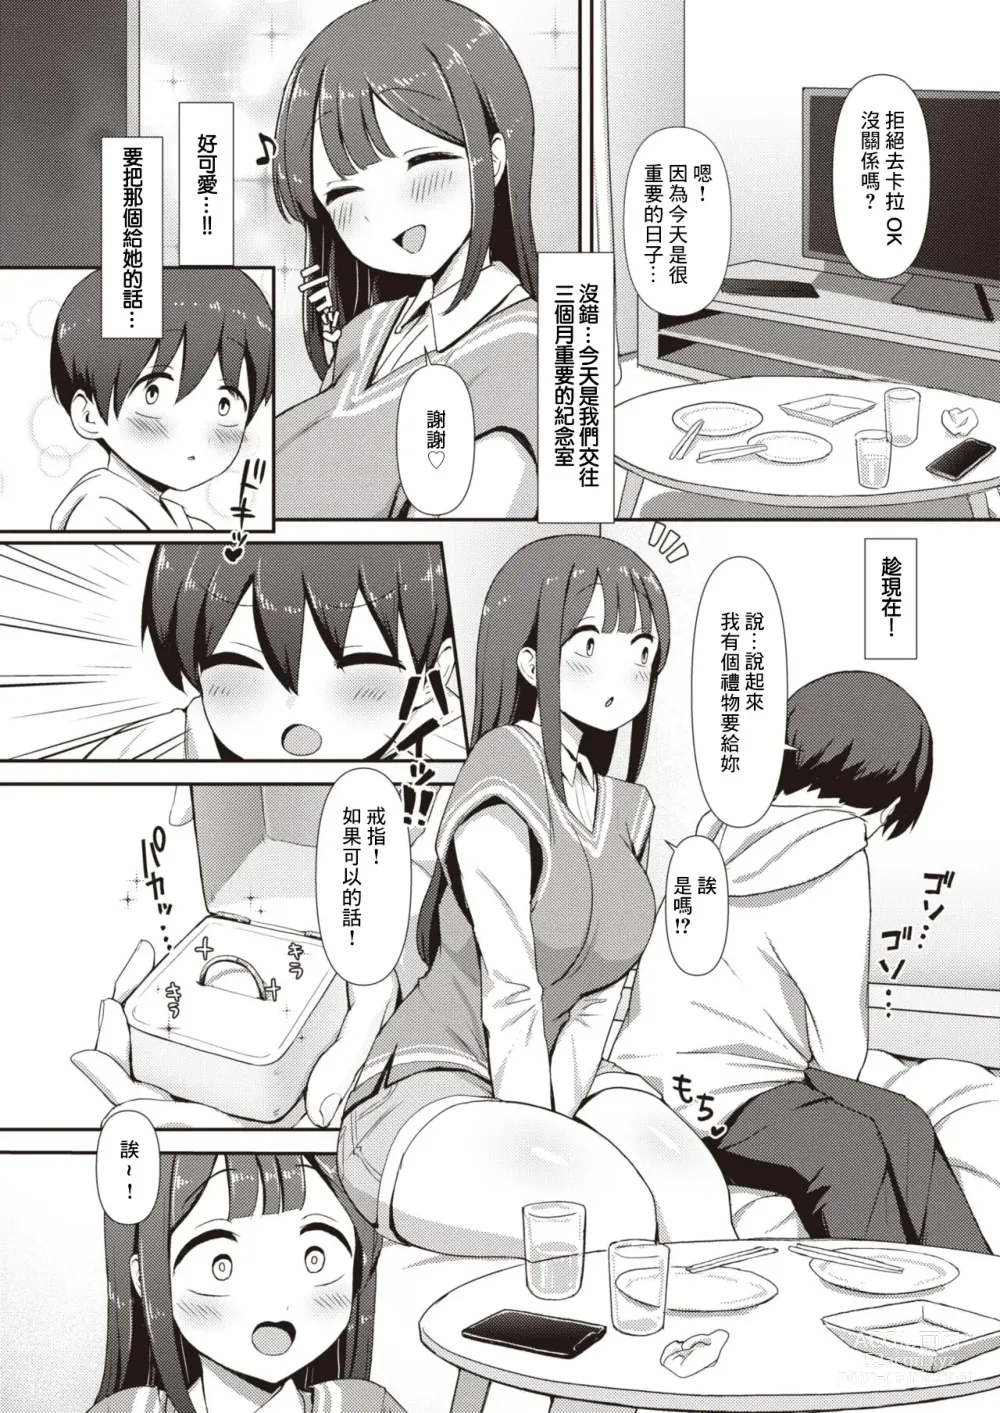 Page 3 of manga Minori-chan ~Kareshi ga Inai to Dame Nandesu~